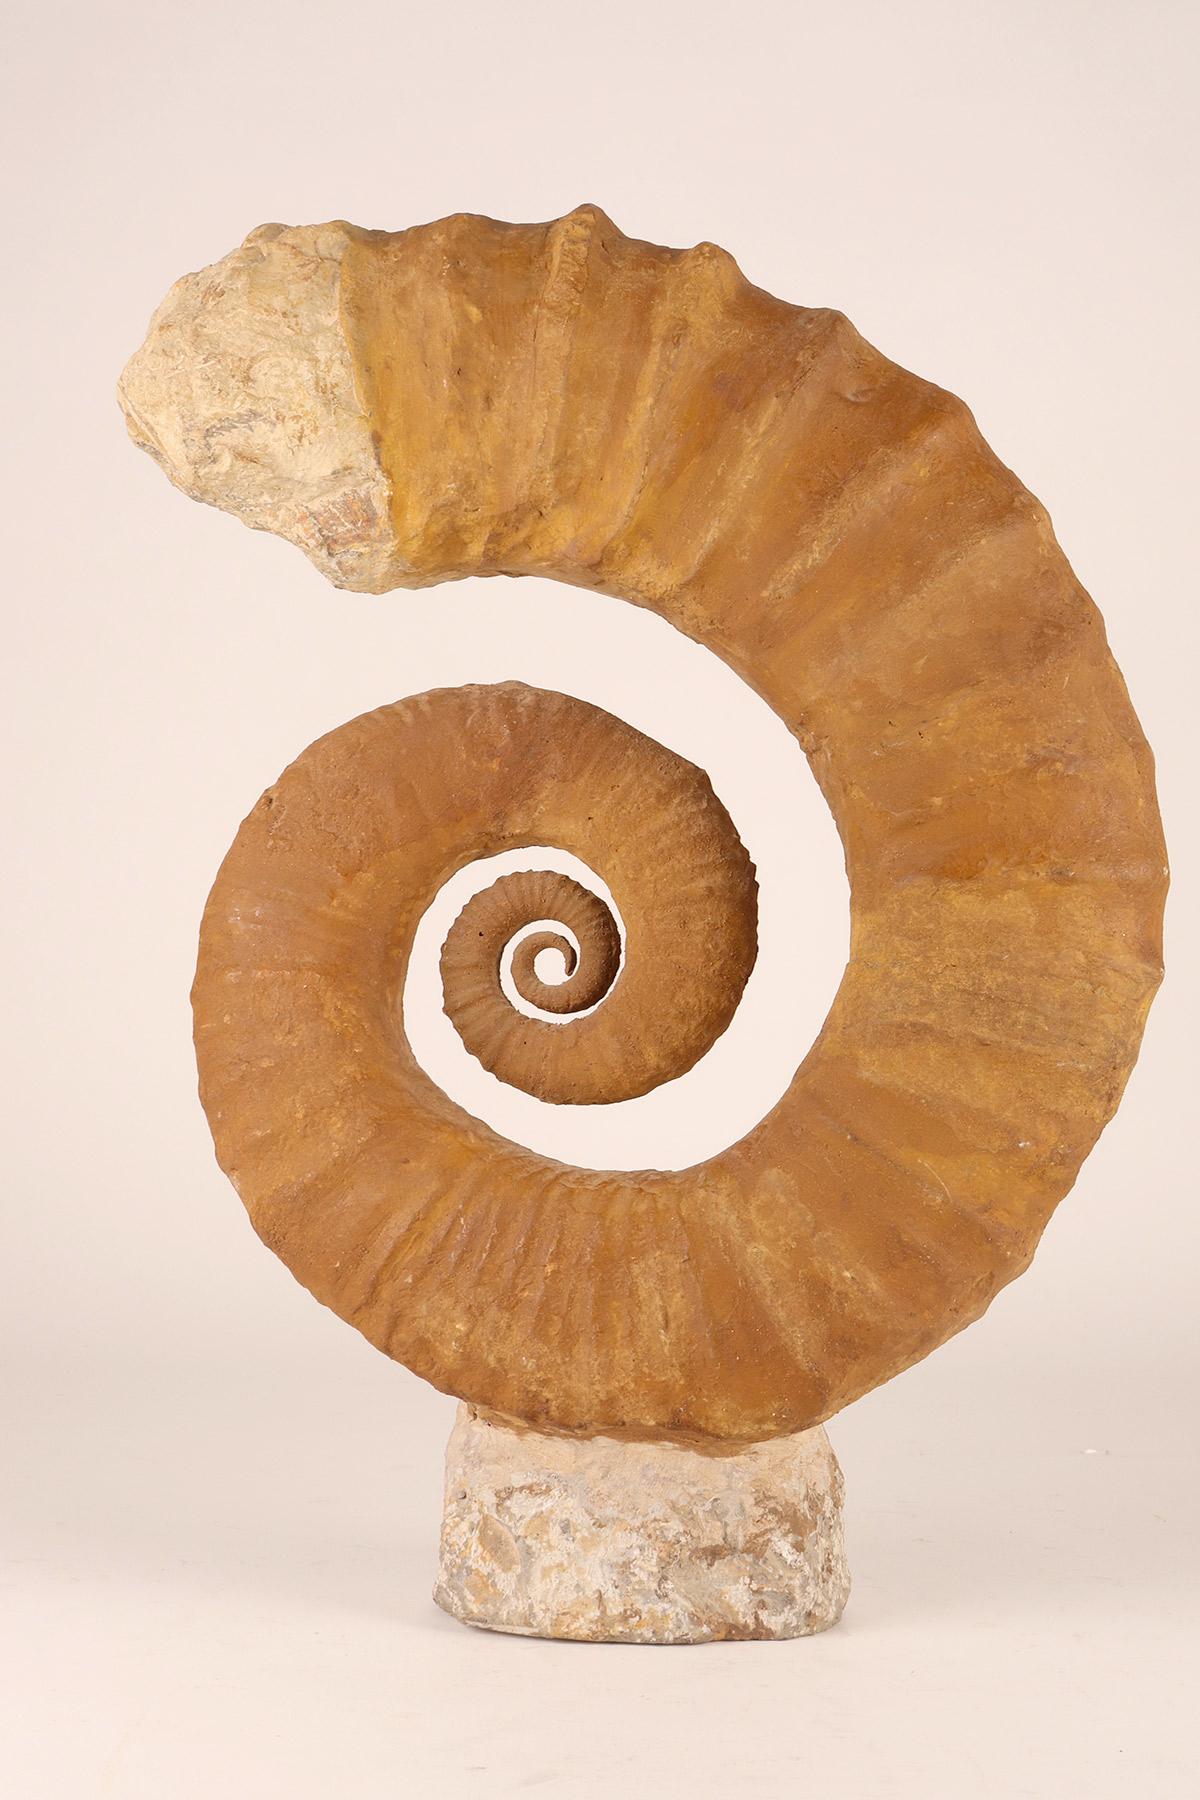 Stone Large Open Coil Heteromorph Ammonite Fossil Specimen, France